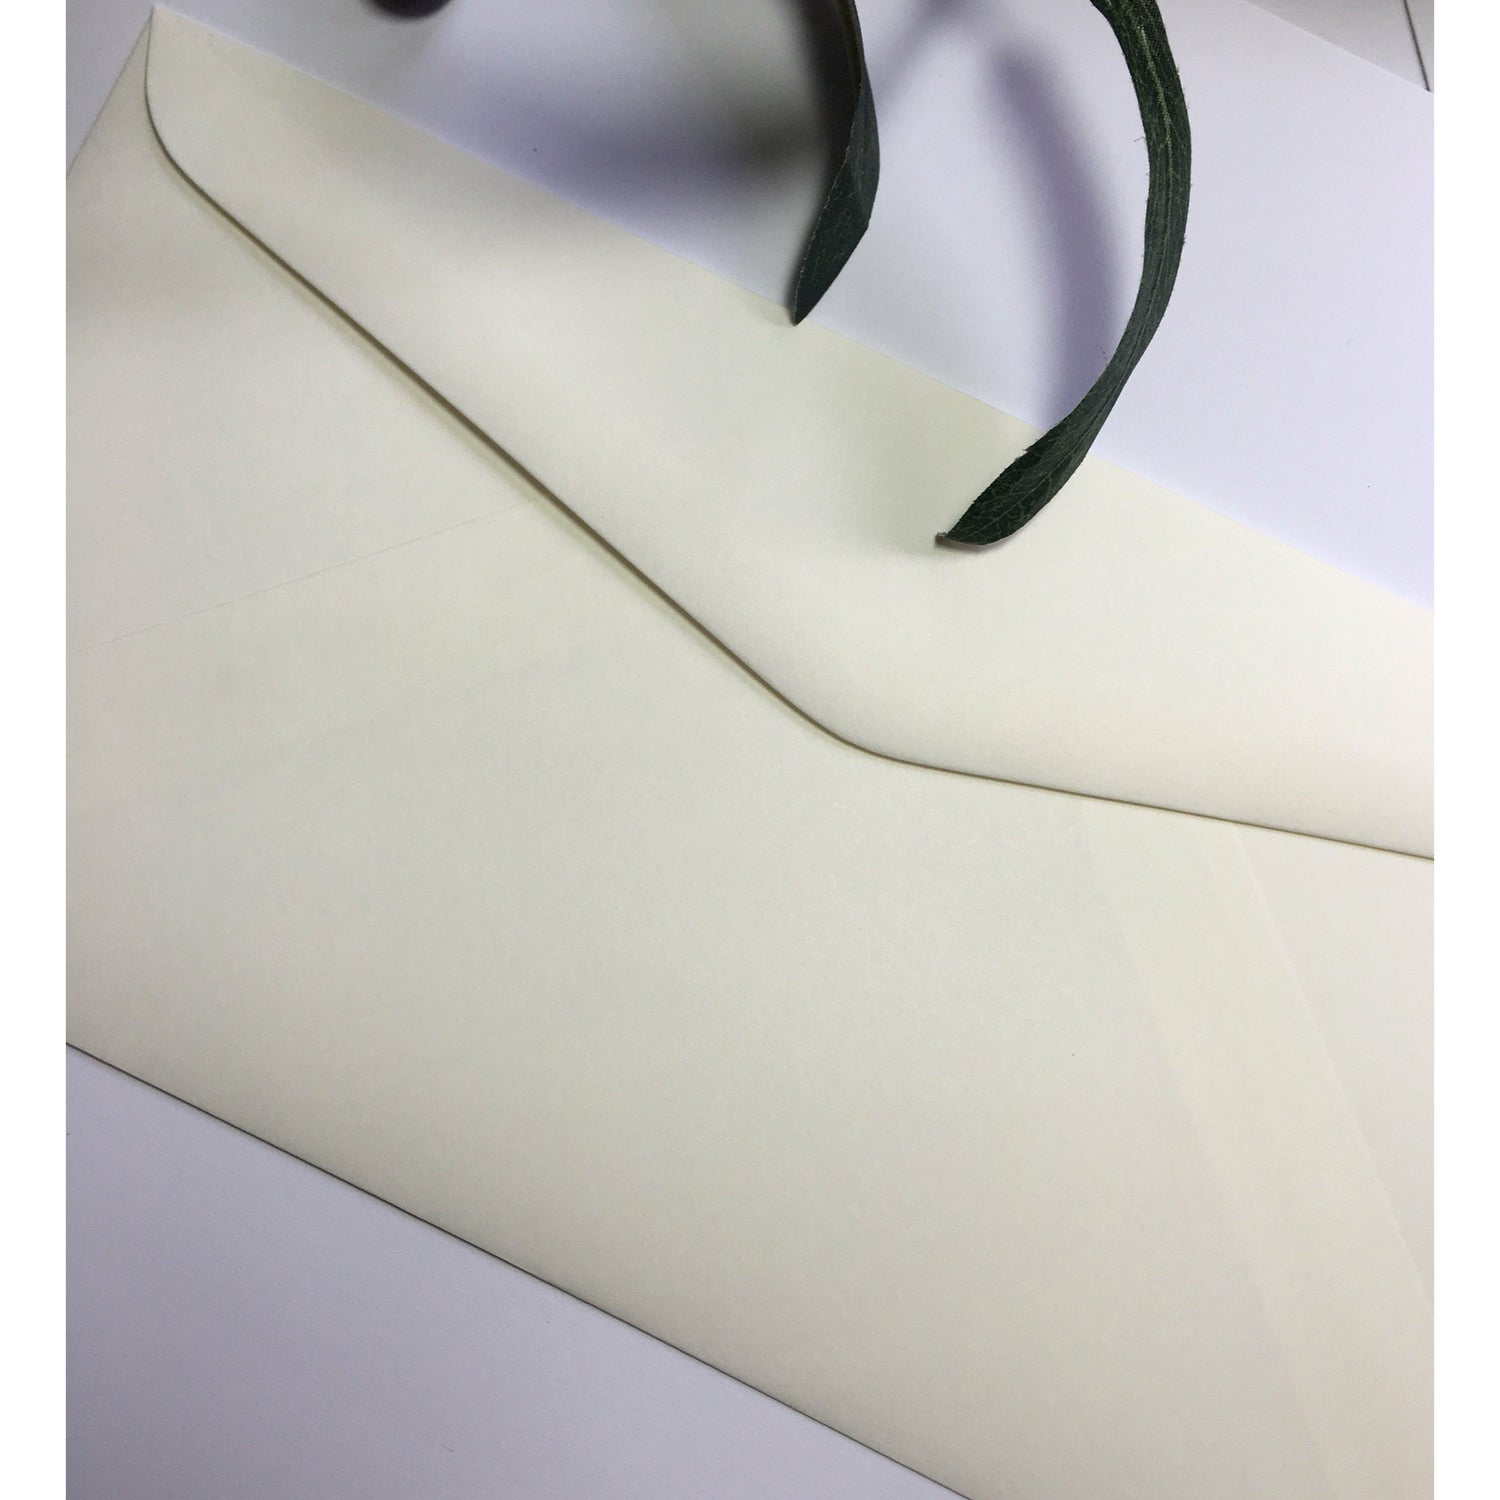 Enveloppes colorées - Gris (Couleur muraille)~110 x 220 mm (DL)